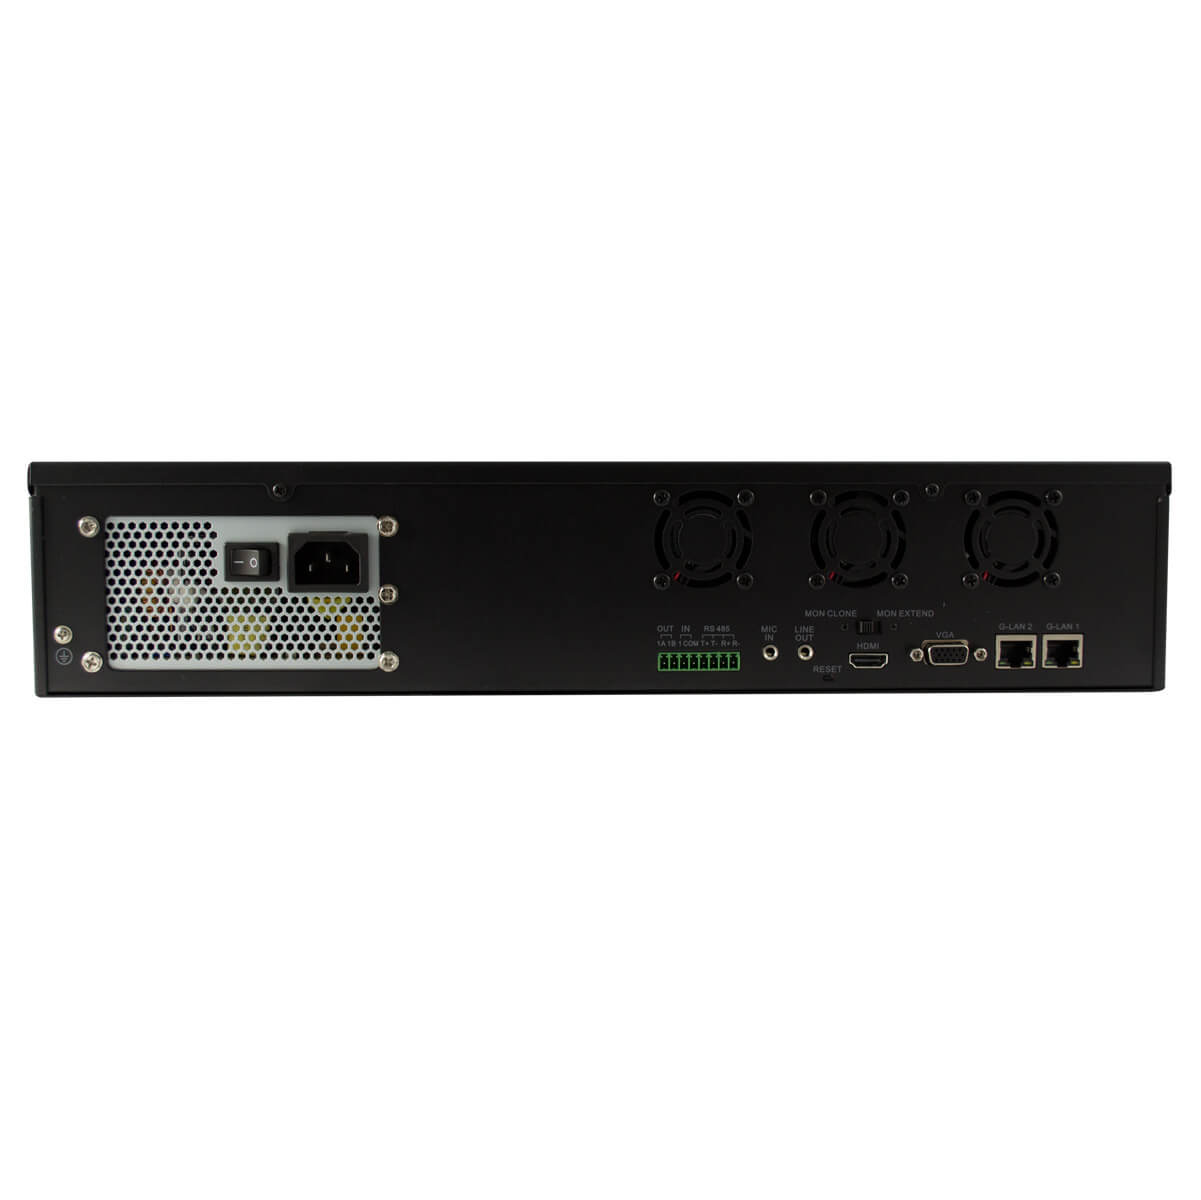 NVR 16-Ch, Compresion H.264 y G.711A, Salidas VGA y HDMI, Onvif.